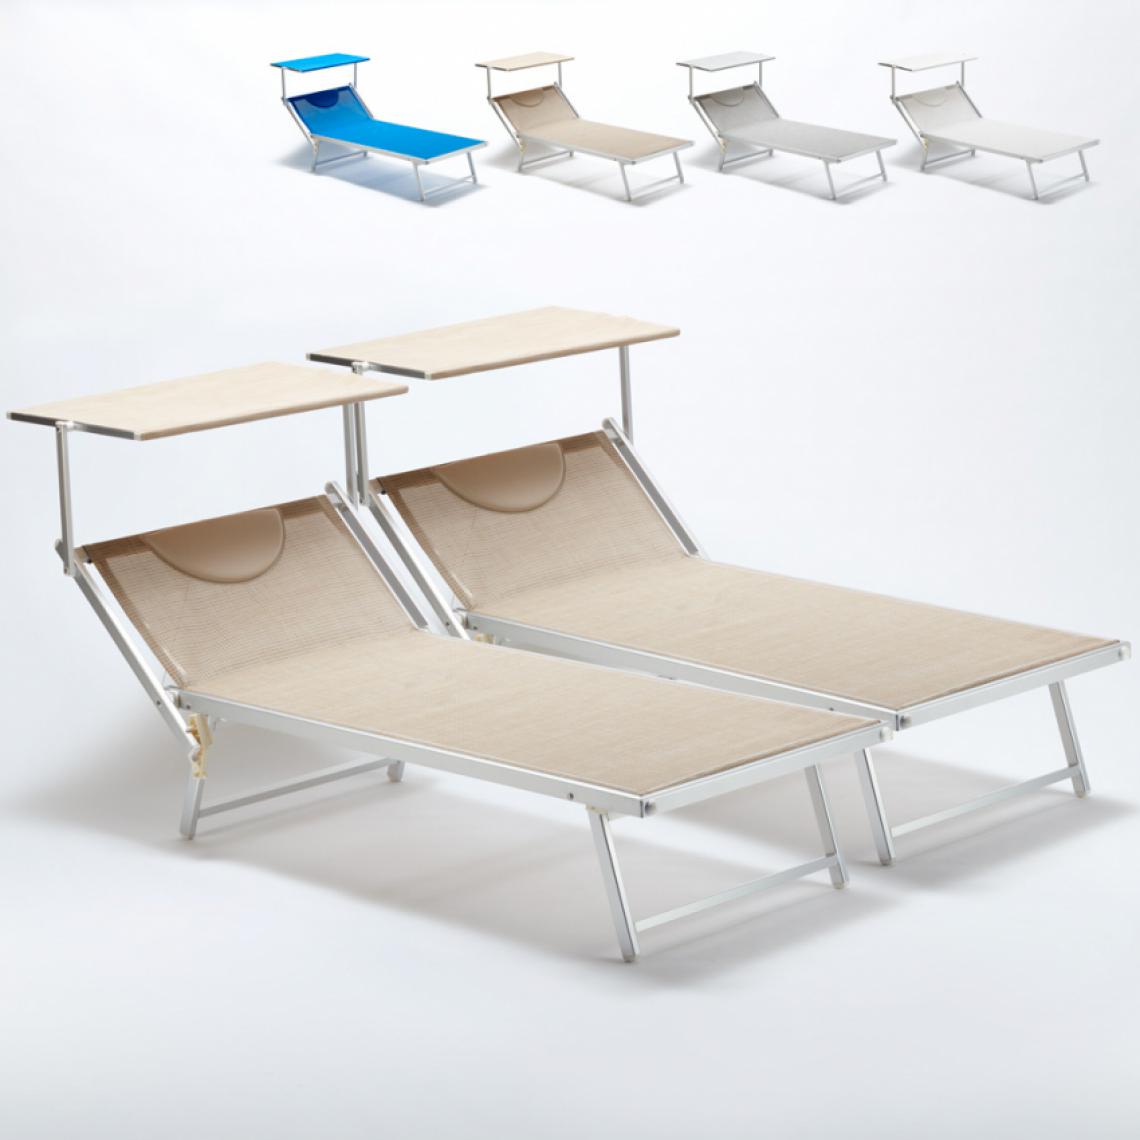 Beach And Garden Design - 2 Bain de soleil Xxl professionnels chaises longue piscine transat aluminium Italia Extralarge, Couleur: Beige - Transats, chaises longues